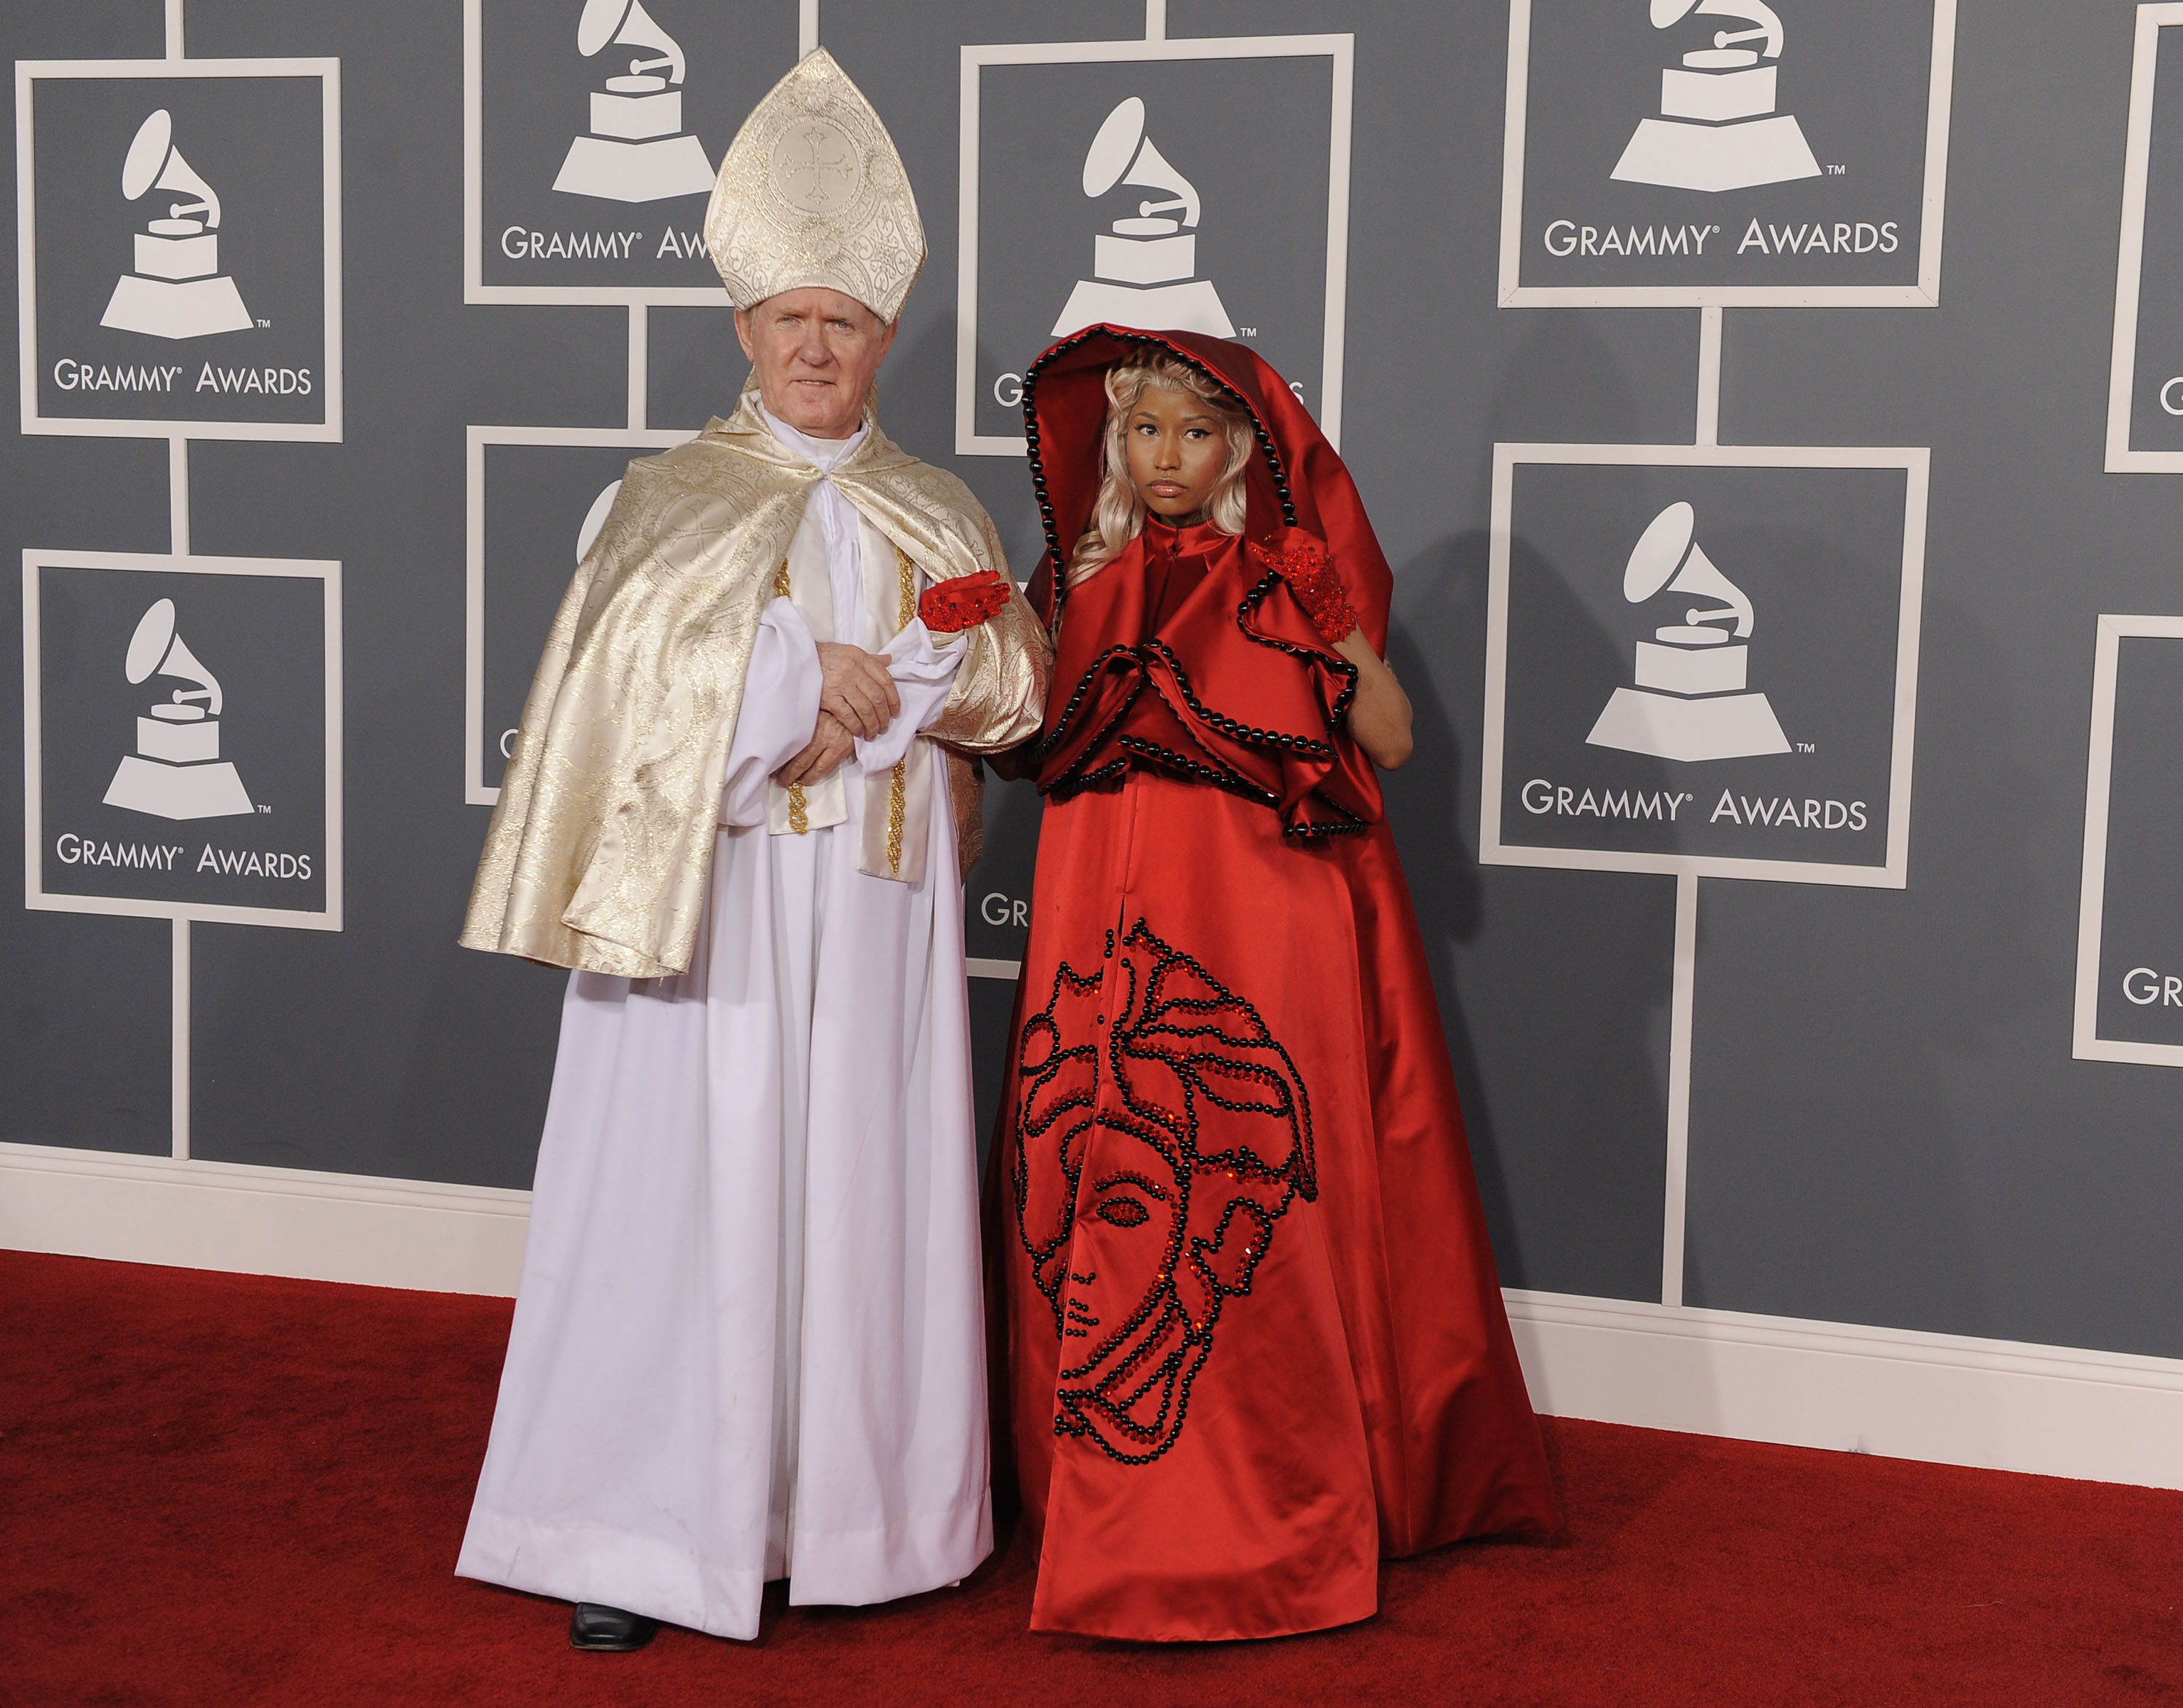 På Grammy Awards fann vi... rödluvan? Djävulen? Tillsammans med en man utklädd till påve. Väldigt, väldigt konstigt.